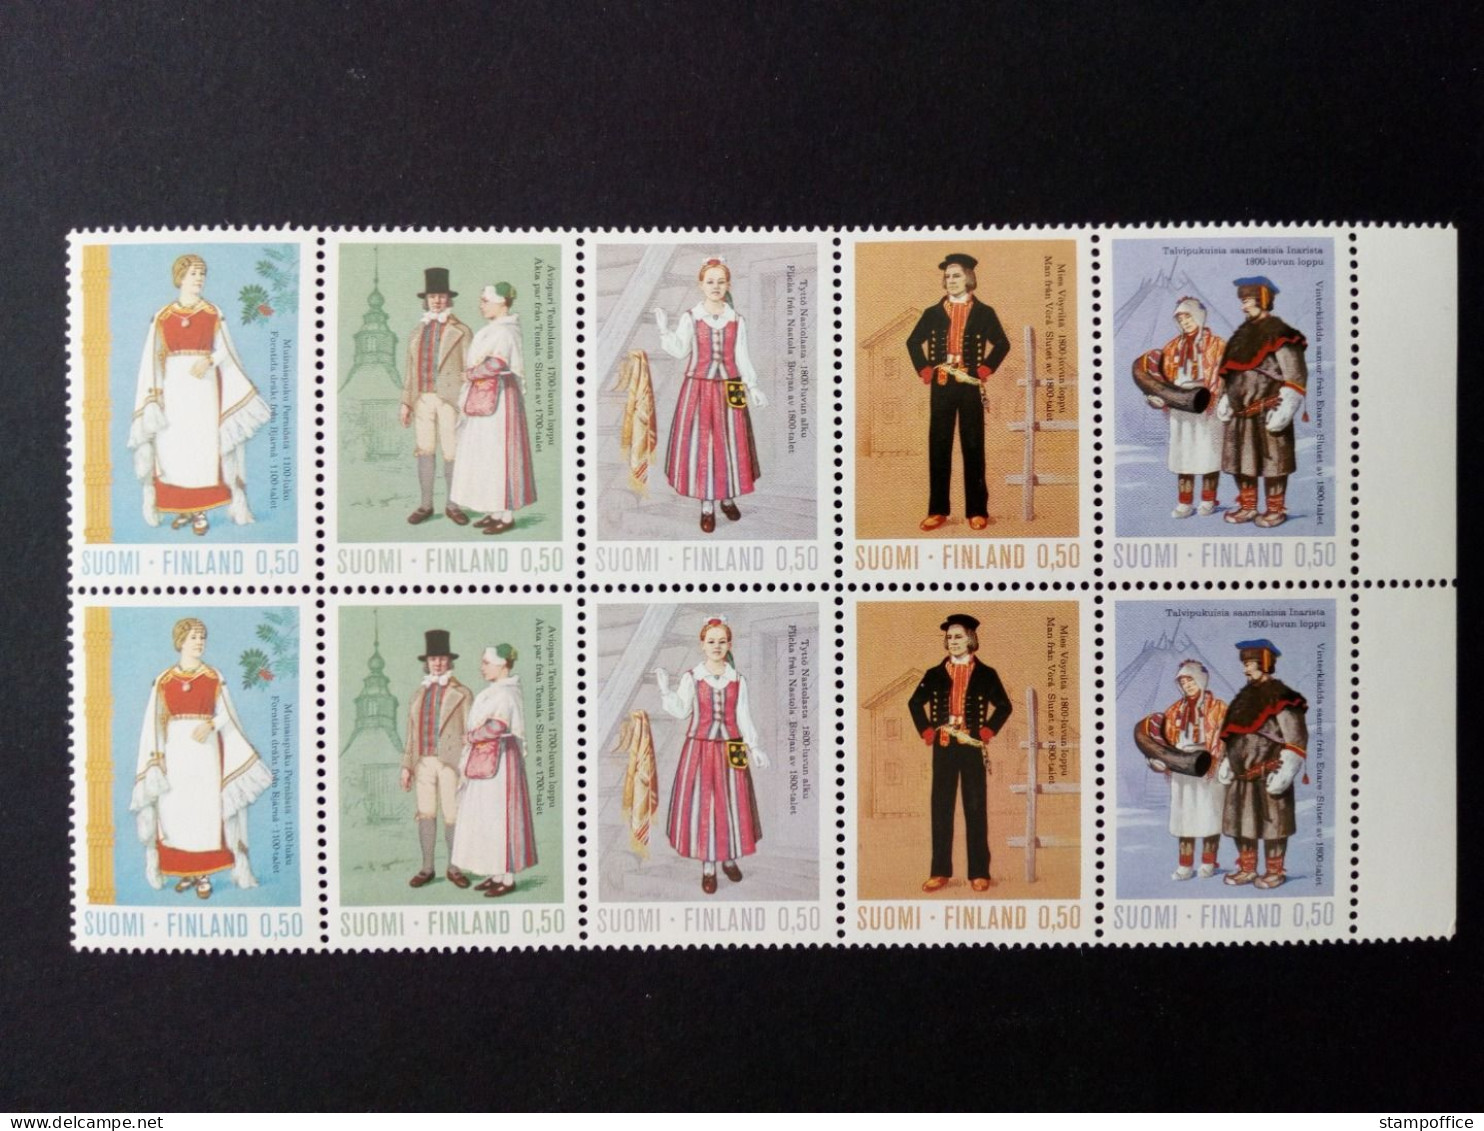 FINNLAND MI-NR. 710-714 POSTFRISCH(MINT) ZUSAMMENDRUCK AUS BOGEN TRACHTEN 1972 - Unused Stamps